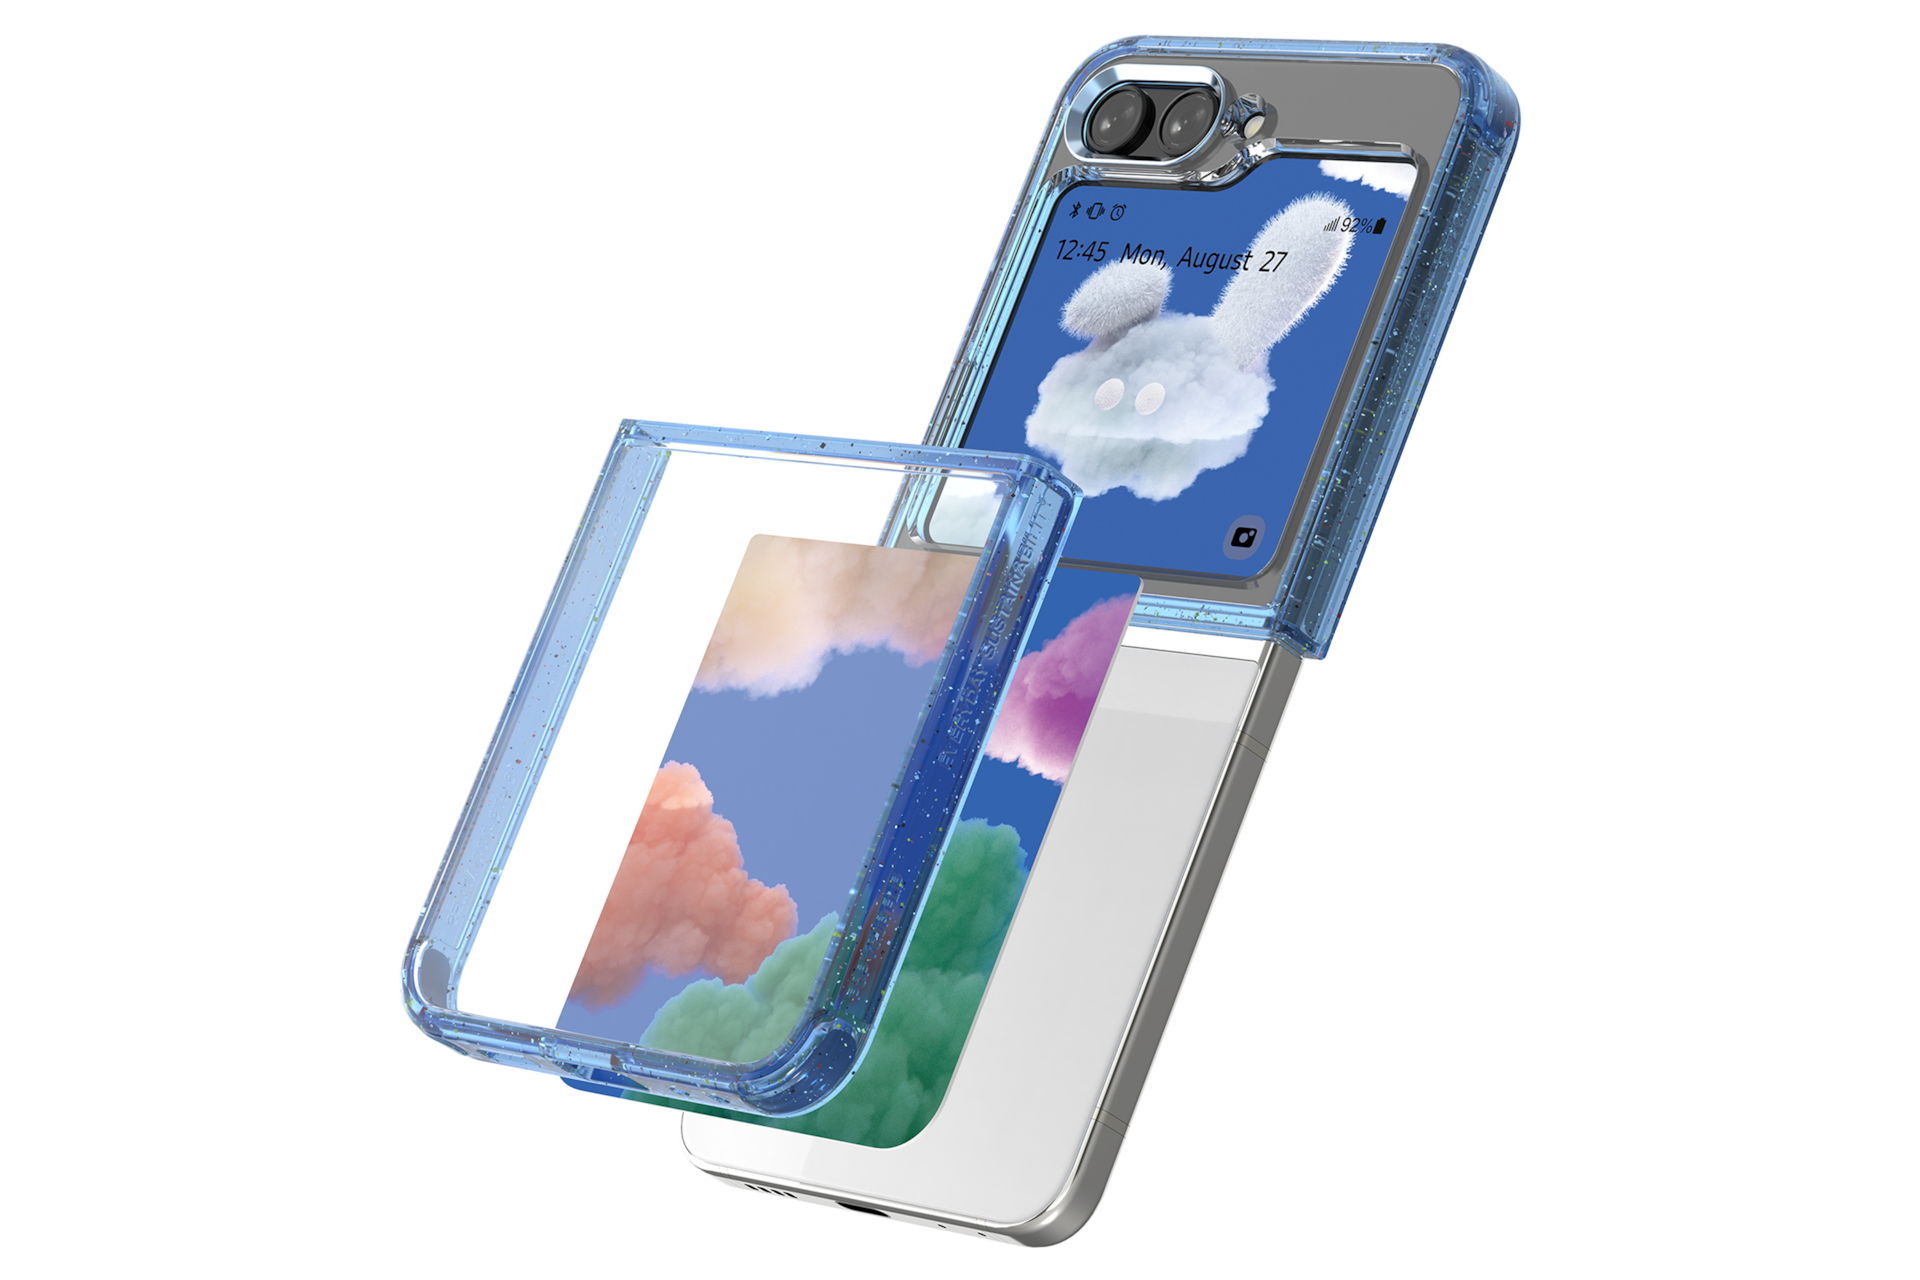 갤럭시 Z 플립5 아티스트 컬렉션 오예슬&이은 플립수트 패키지 (수트 케이스 + 플립수트 카드 2 매) (블루) 제품에 갤럭시 Z 플립을 장착하는 왼쪽 회전 이미지 